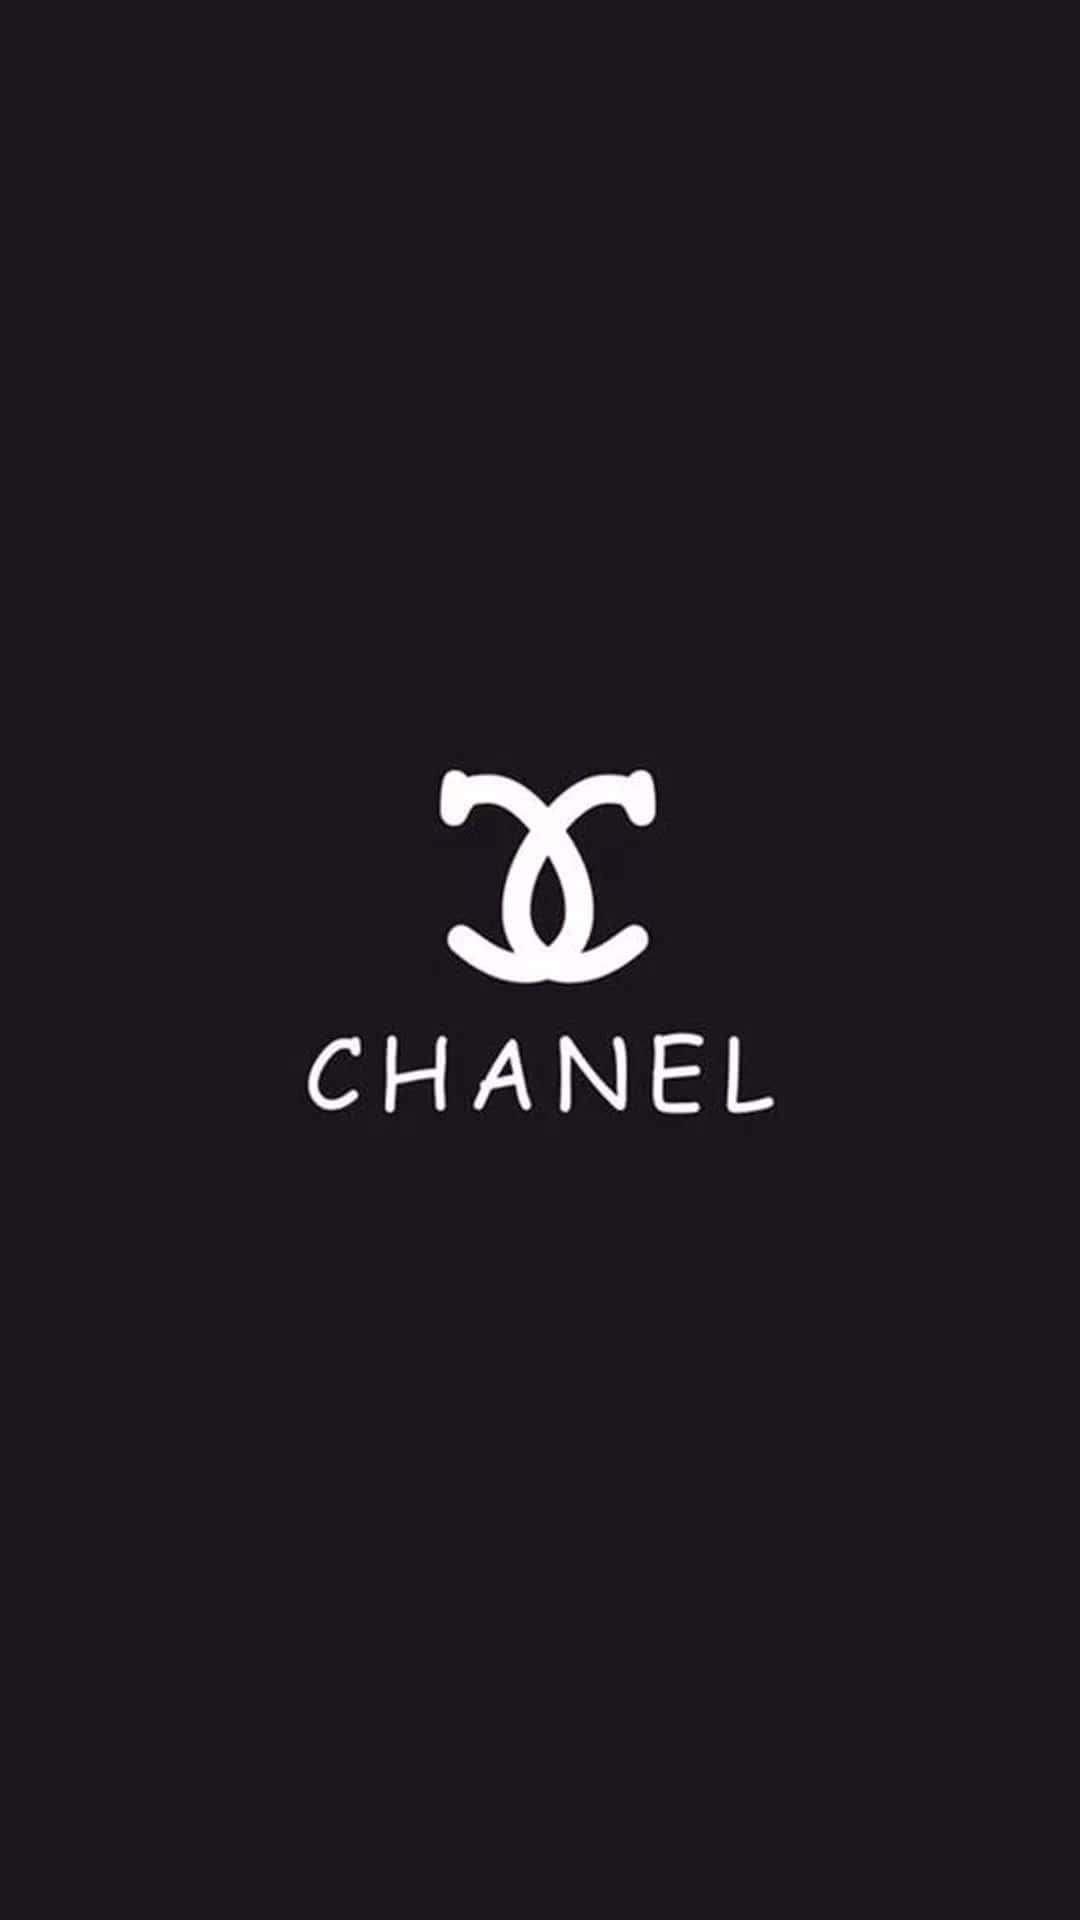 Chanellogo Auf Schwarzem Hintergrund